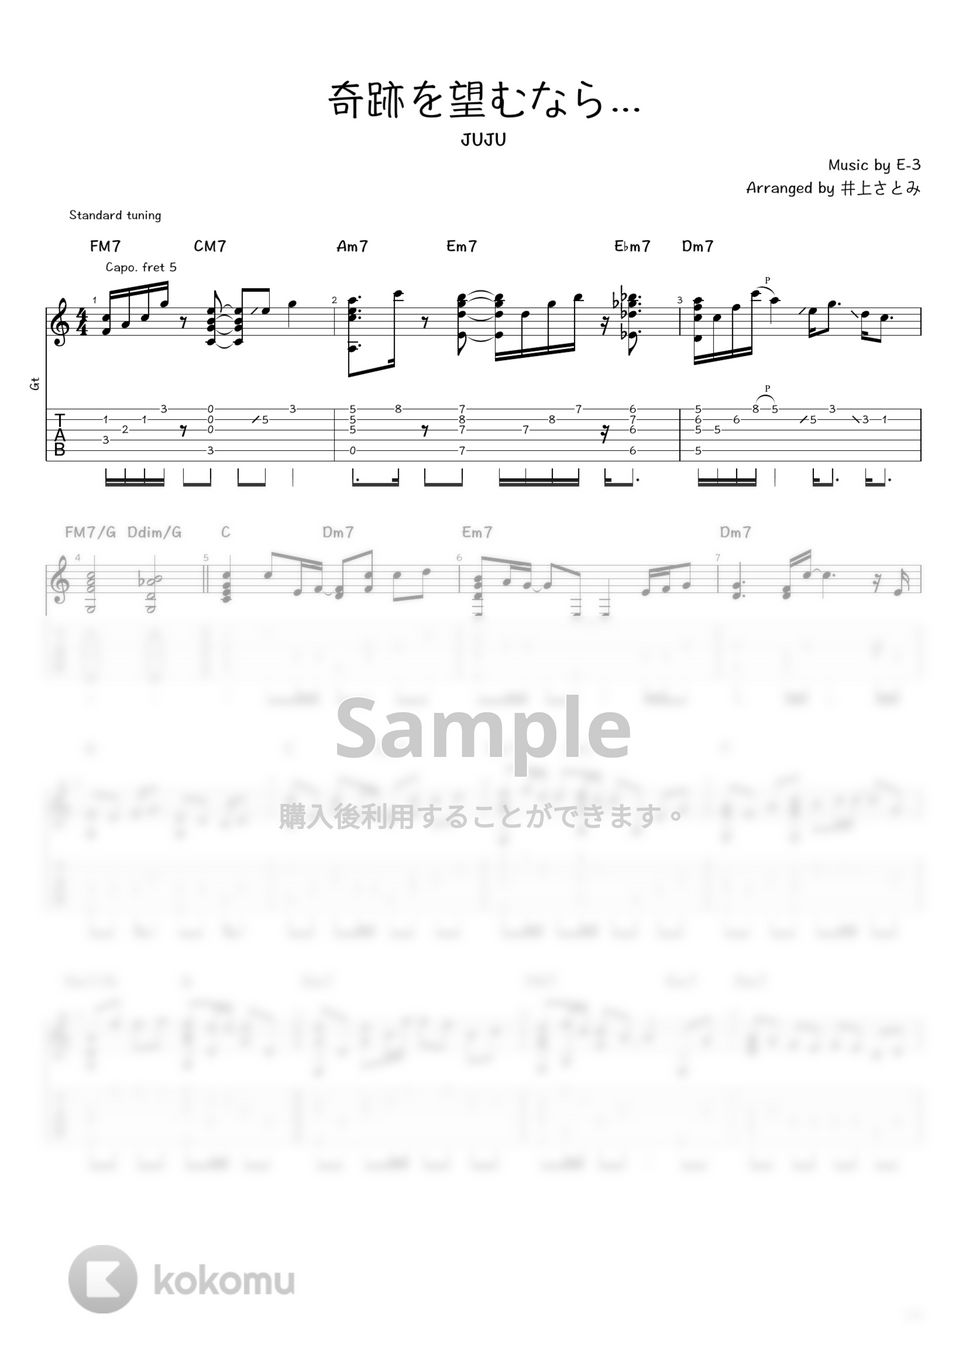 JUJU - 奇跡を望むなら... (ソロギター / タブ譜) by 井上さとみ